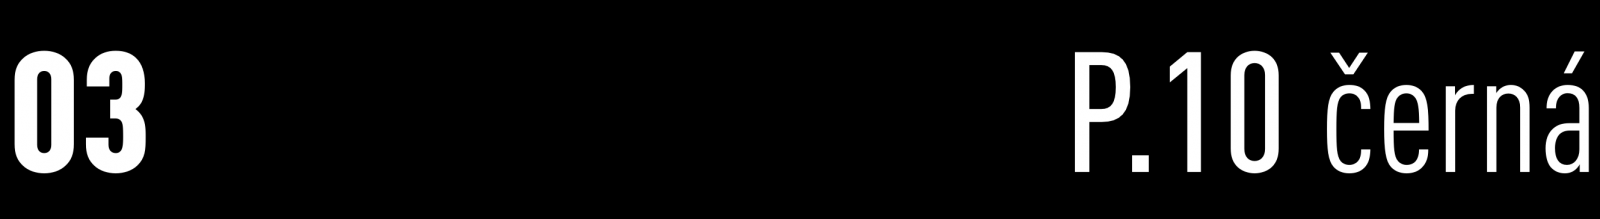 PREFA - PŮLKULATÝ ŽLAB 400 (3 m) S OCHRANNOU FÓLIÍ hliníkový - 03 P.10 černá (RAL 9005), Kód: 210144